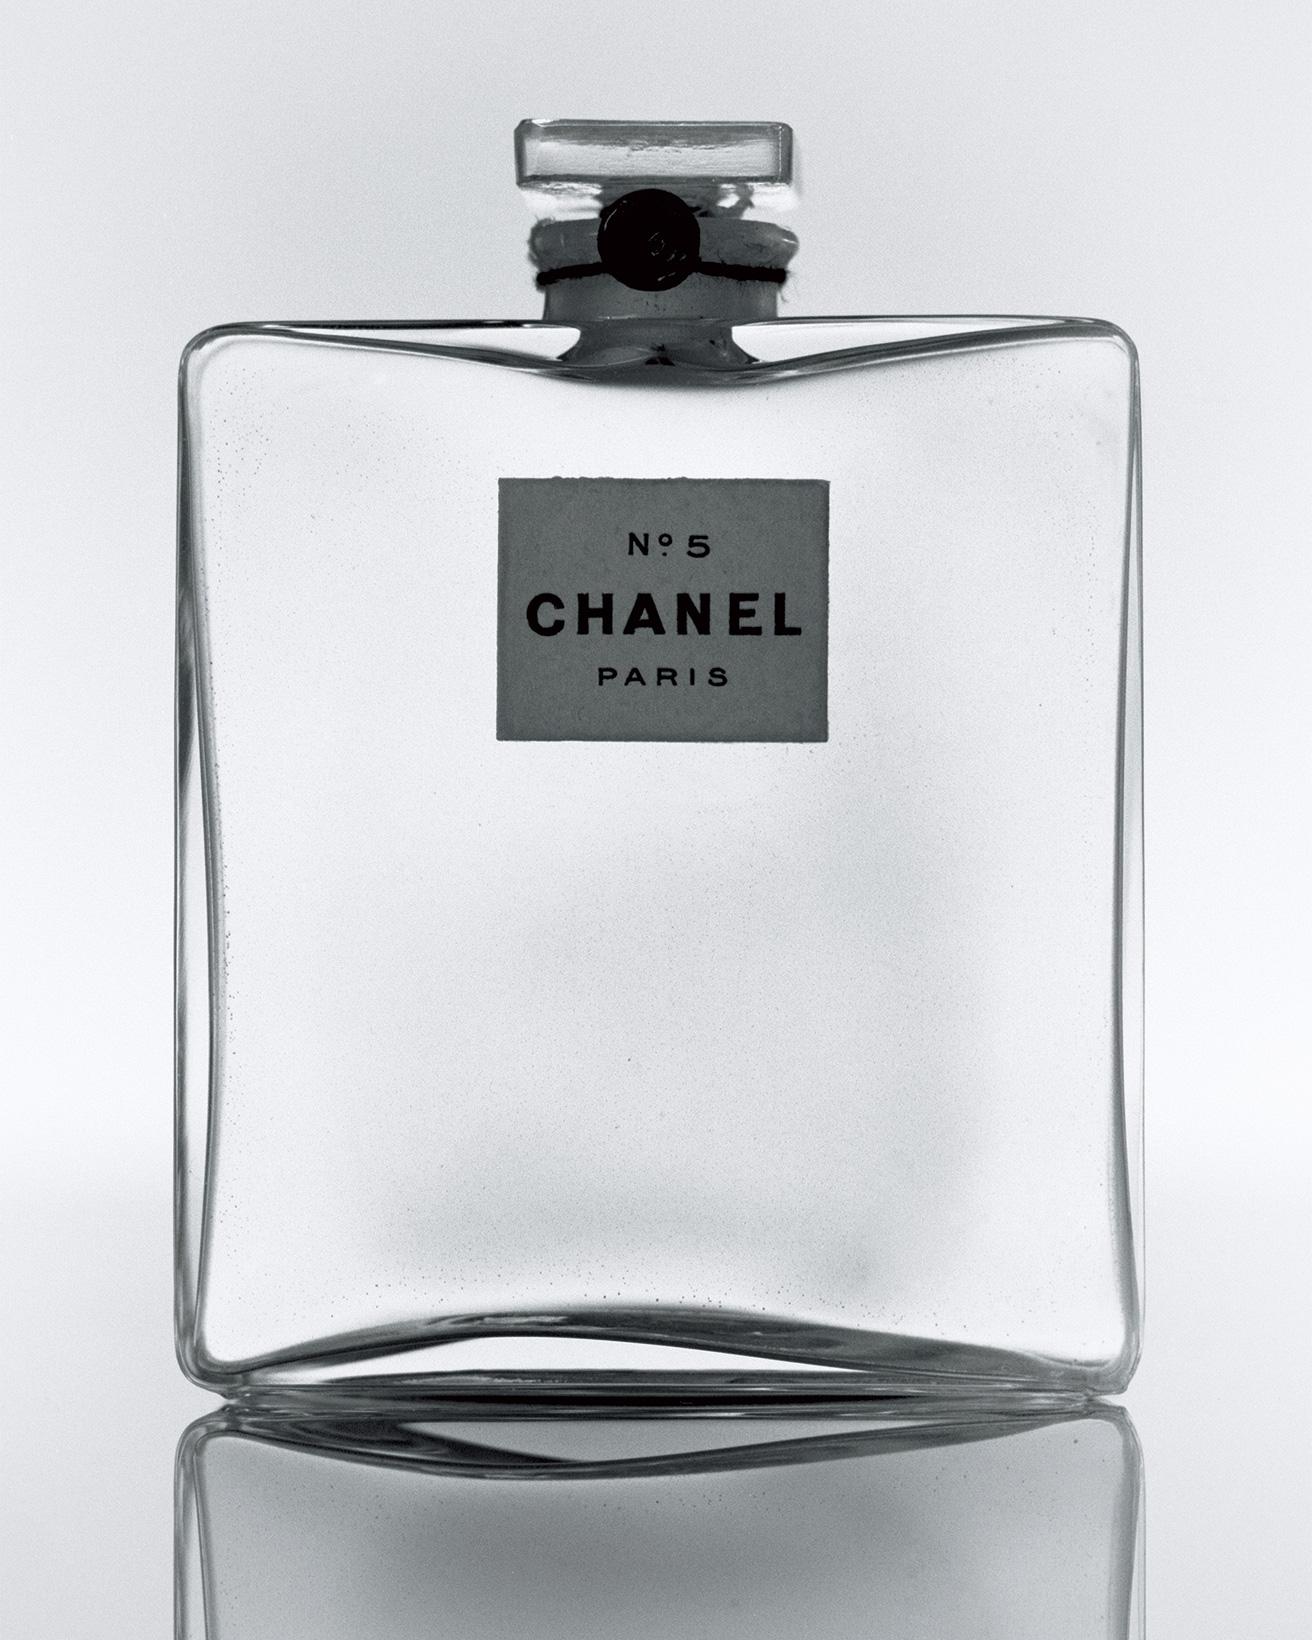 ［1921］現代女性の目に見えないアクセサリー
言わずと知れた《シャネル N°5》。20世紀初期において革新的な香水だった。ガラス、木綿糸、封蝋、紙。（パリ、パトリモアンヌ・シャネル）